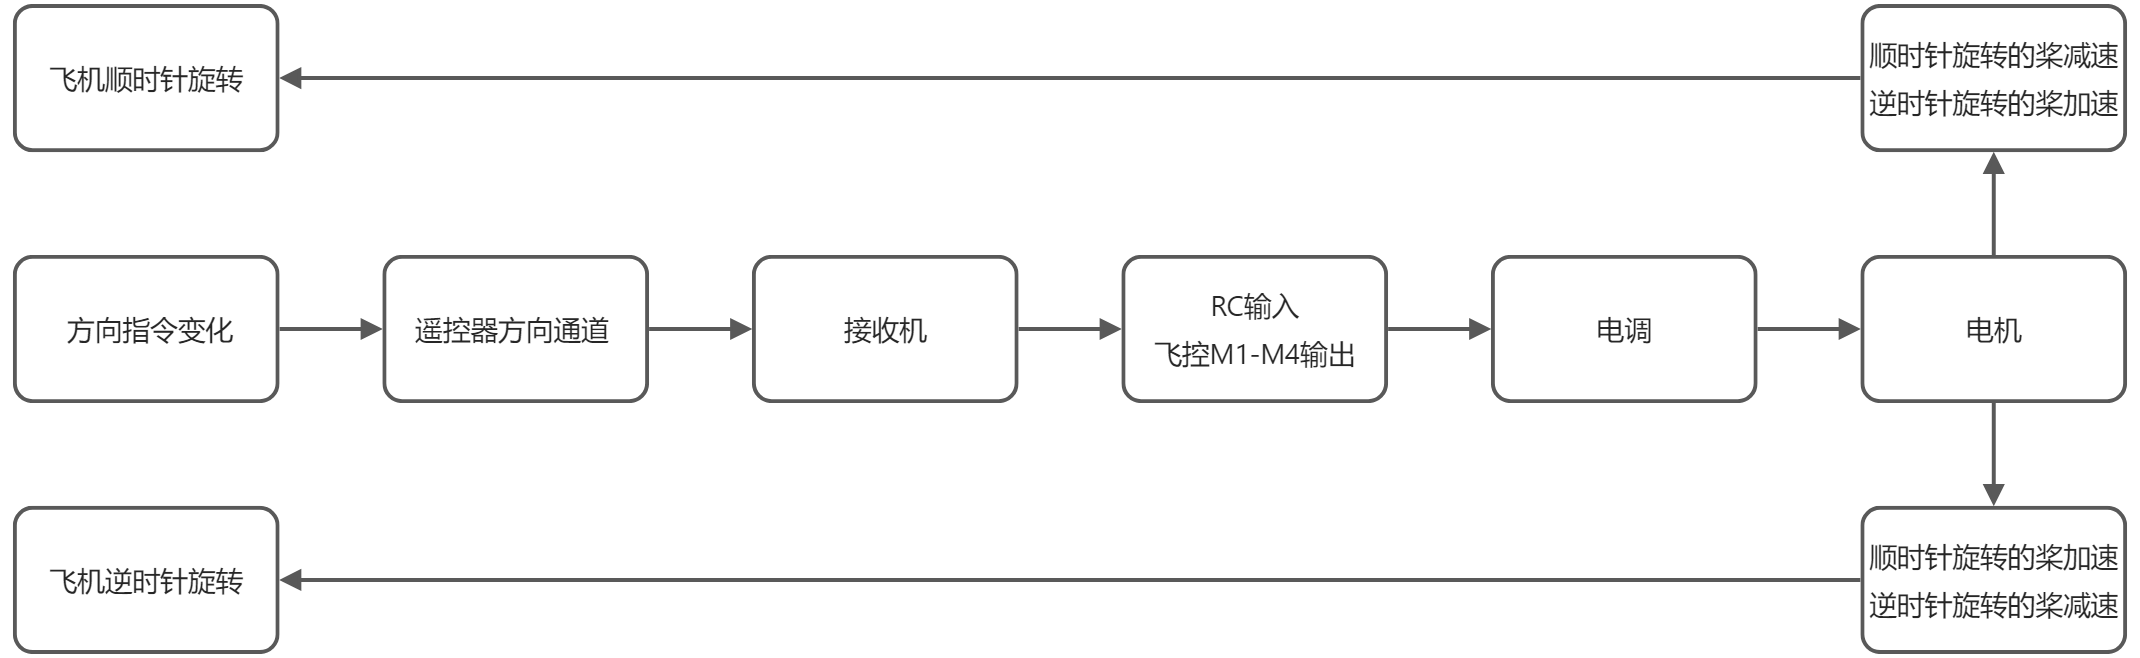 yuque_diagram(3).jpg